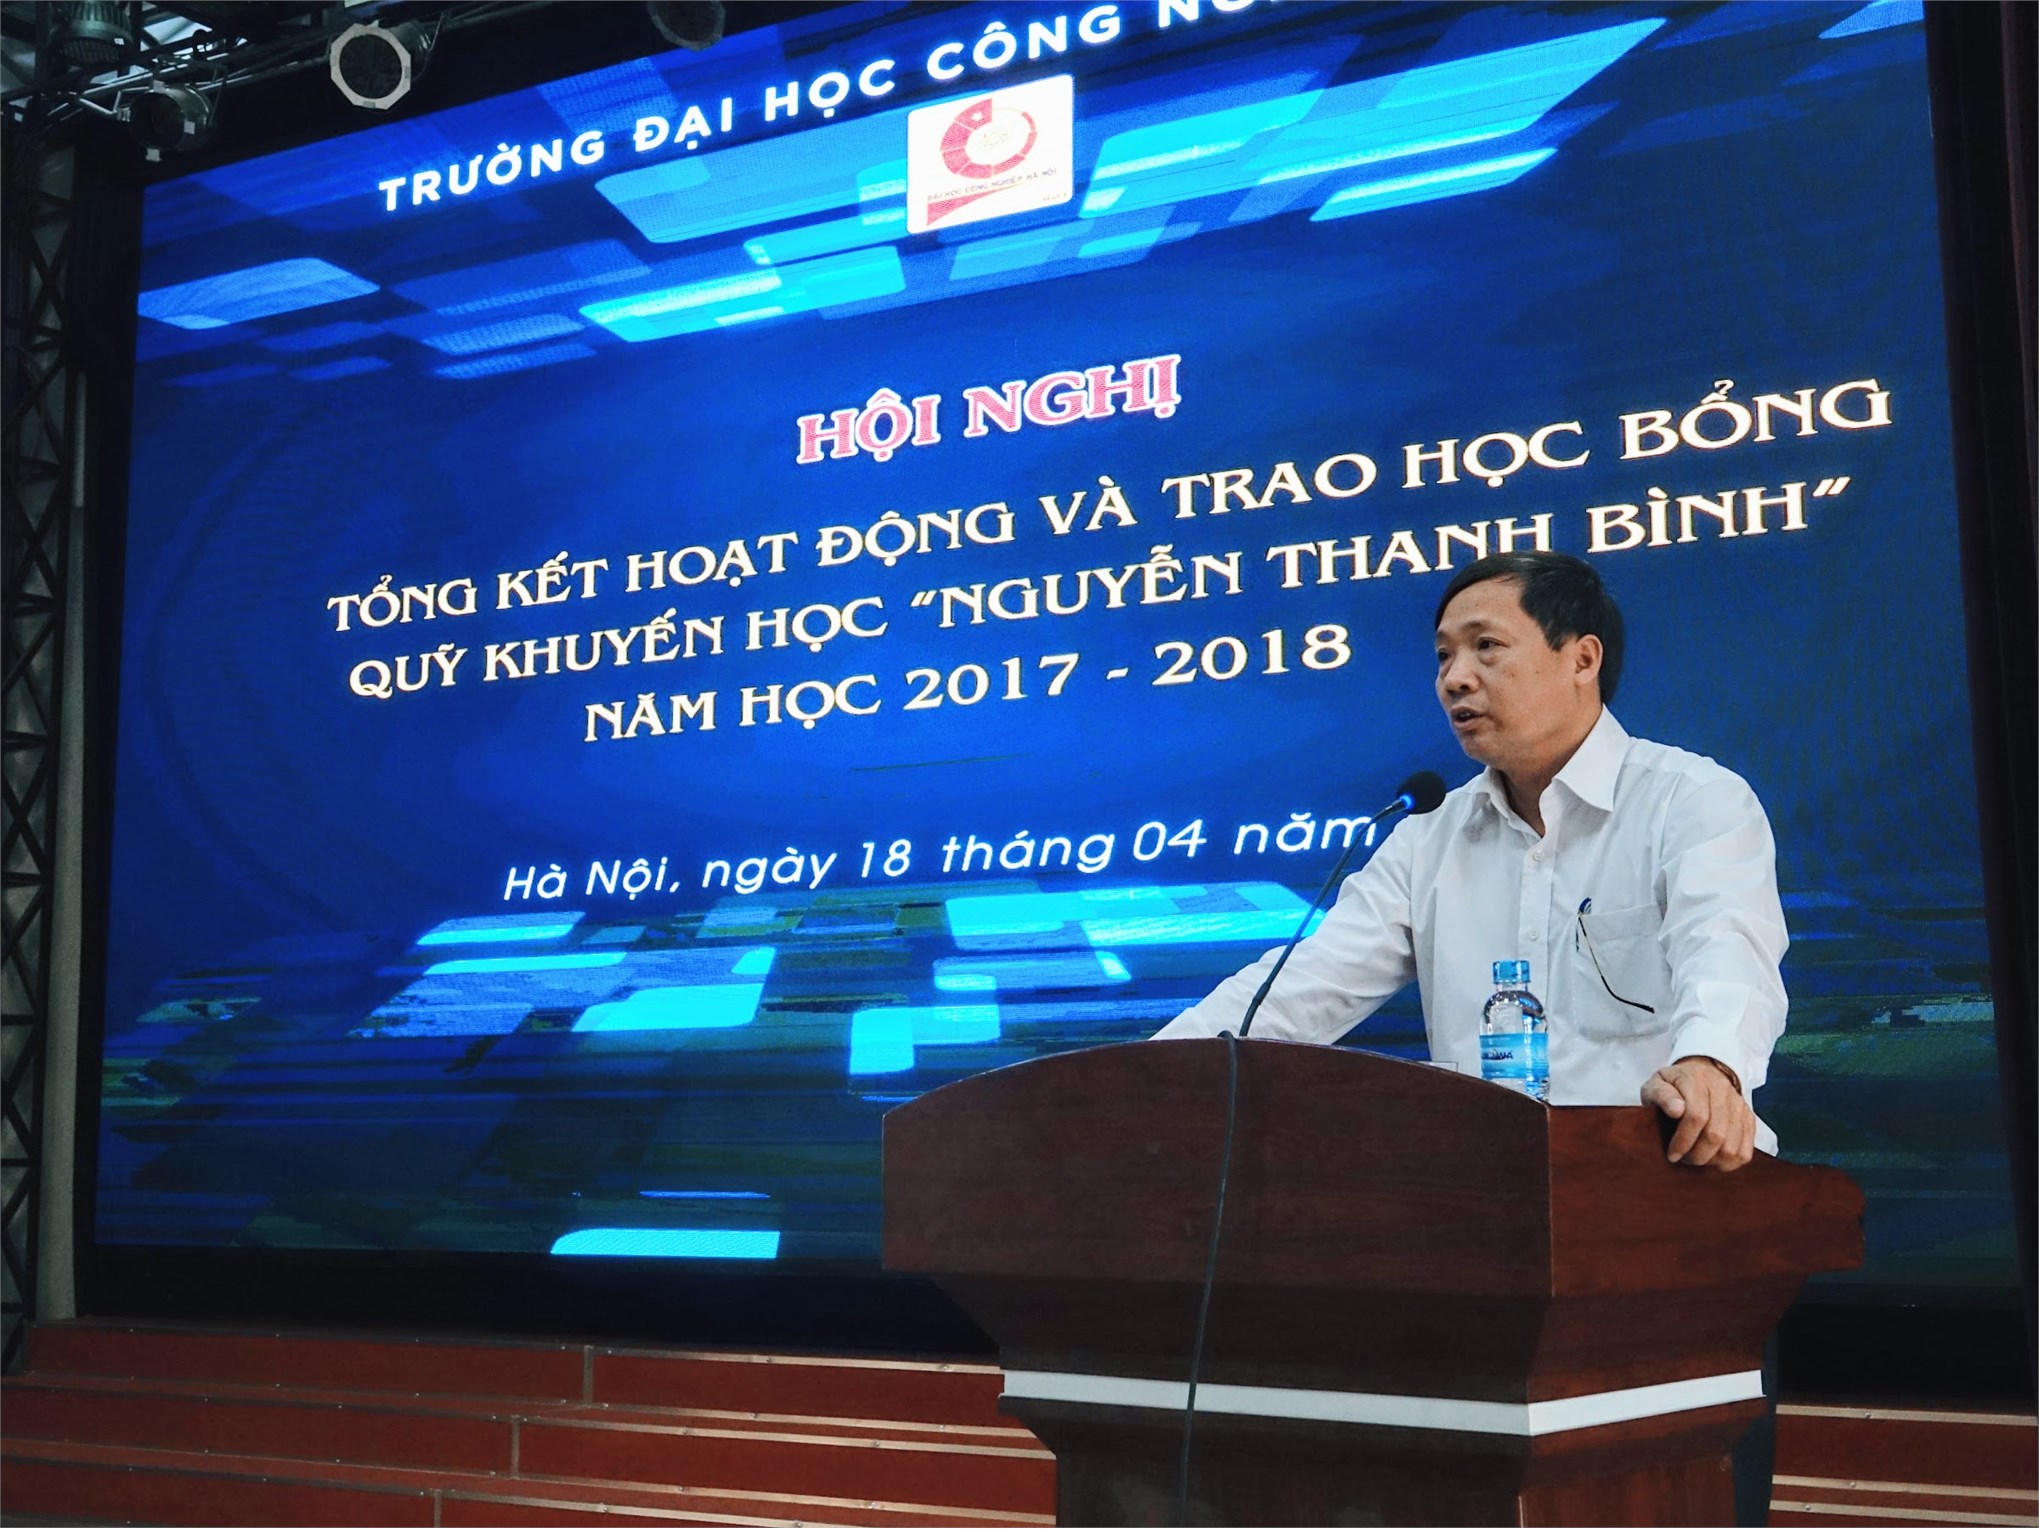 24 sinh viên Việt Nhật được nhận học bổng Nguyễn Thanh Bình năm học 2017 - 2018